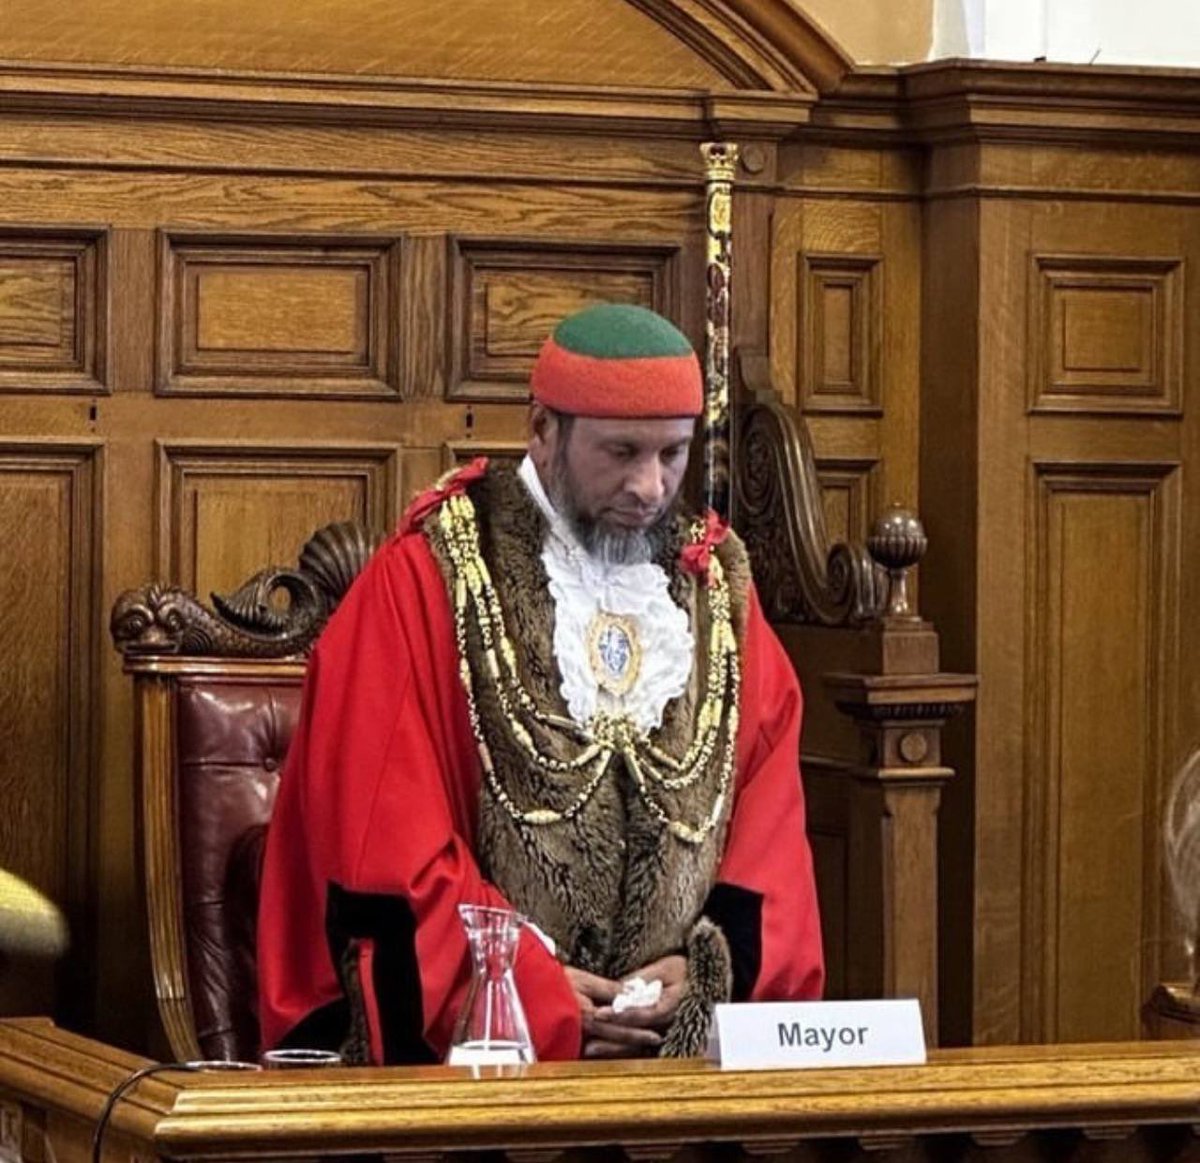 El nuevo Alcalde de Brighton & Hove,Reino Unido, implementará medidas “acordes al respeto y decoro a la comunidad musulmana”: Mohammed Asaduzzaman, logró movilizar a los musulmanes y obtener una aplastante mayoría en una de las principales ciudades de Reino Unido.